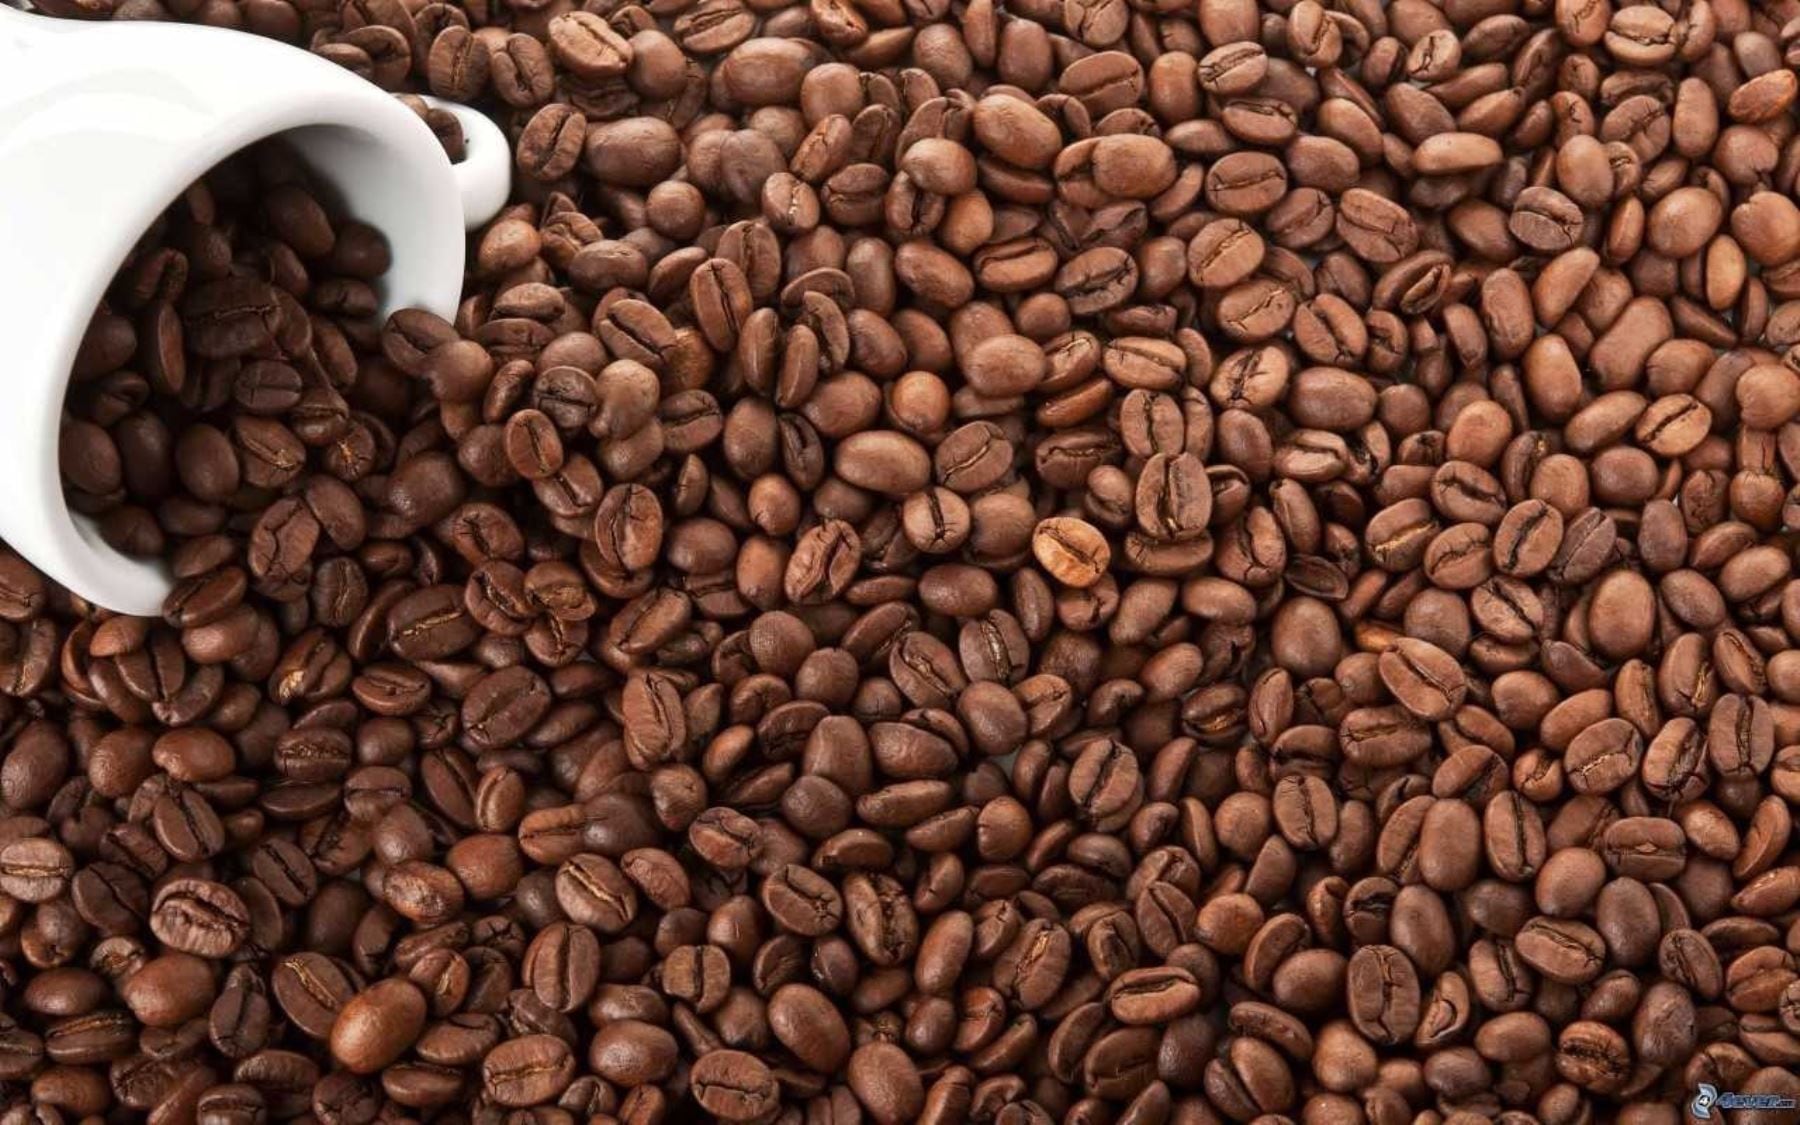 Al año, 10.000 millones de kilos de los desechos del mundo corresponden al café (Andina)